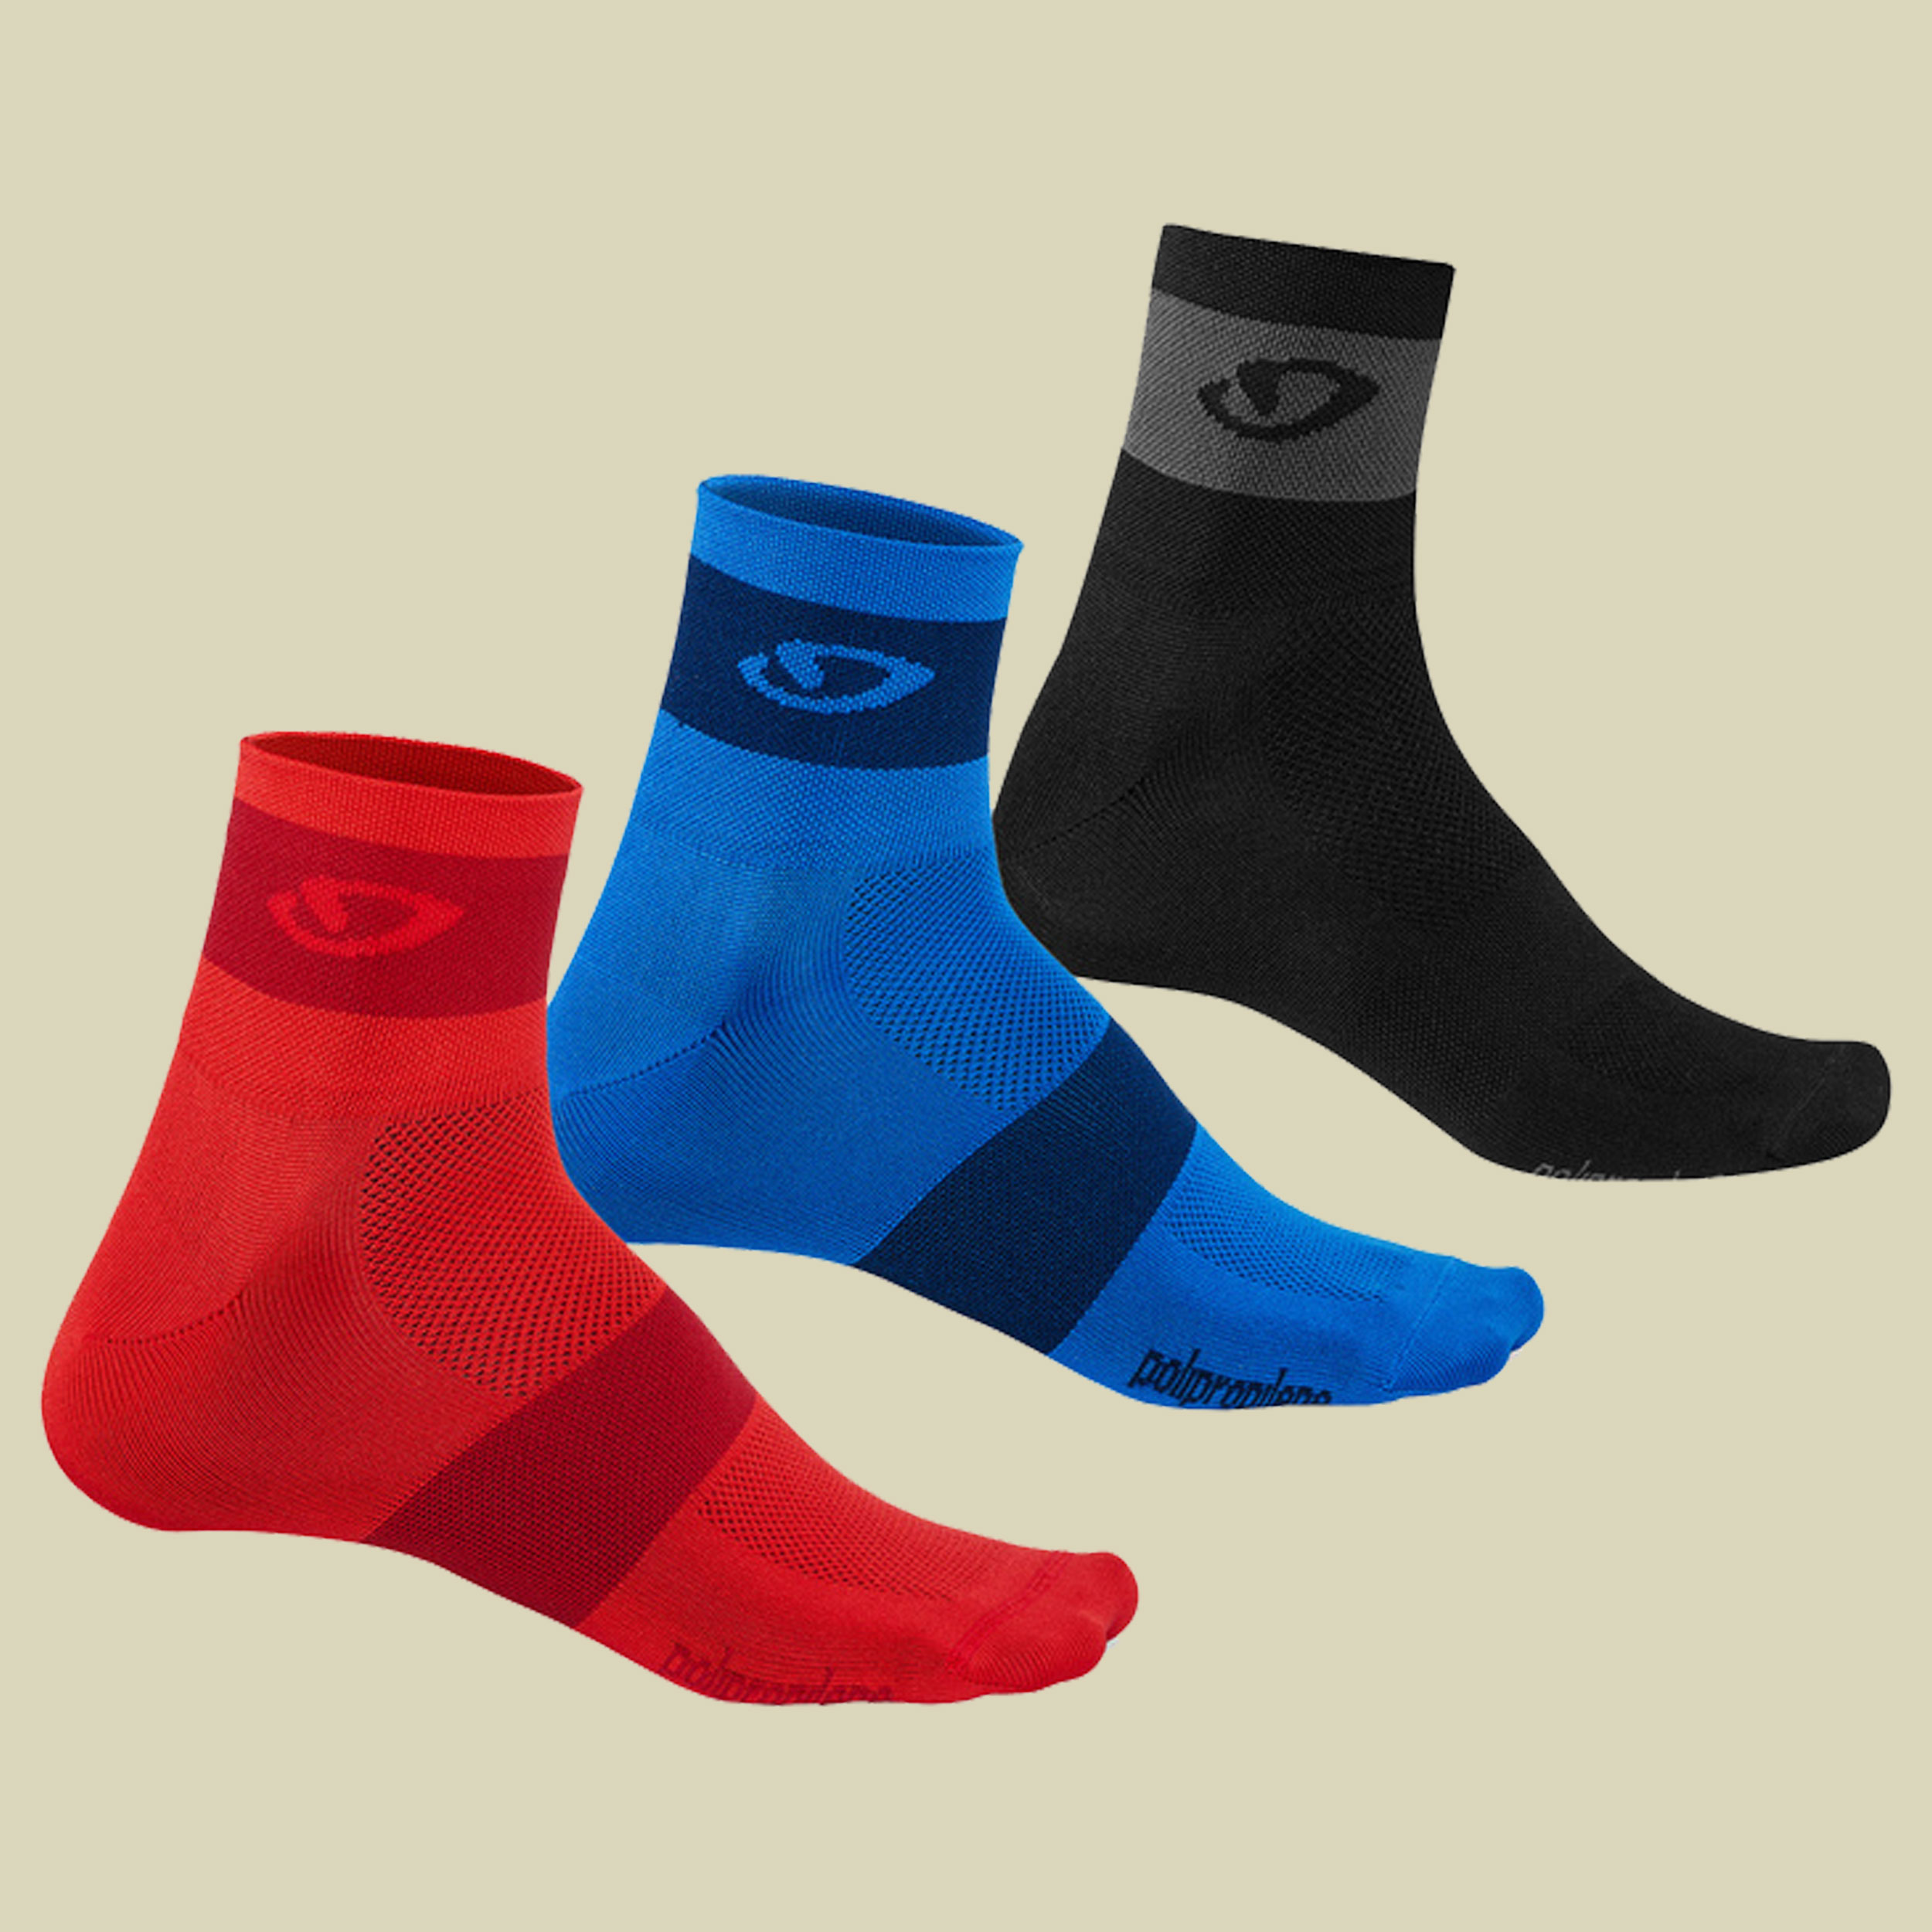 Comp Racer Socks 3er Pack Größe S Farbe bright red/blue/charcoal